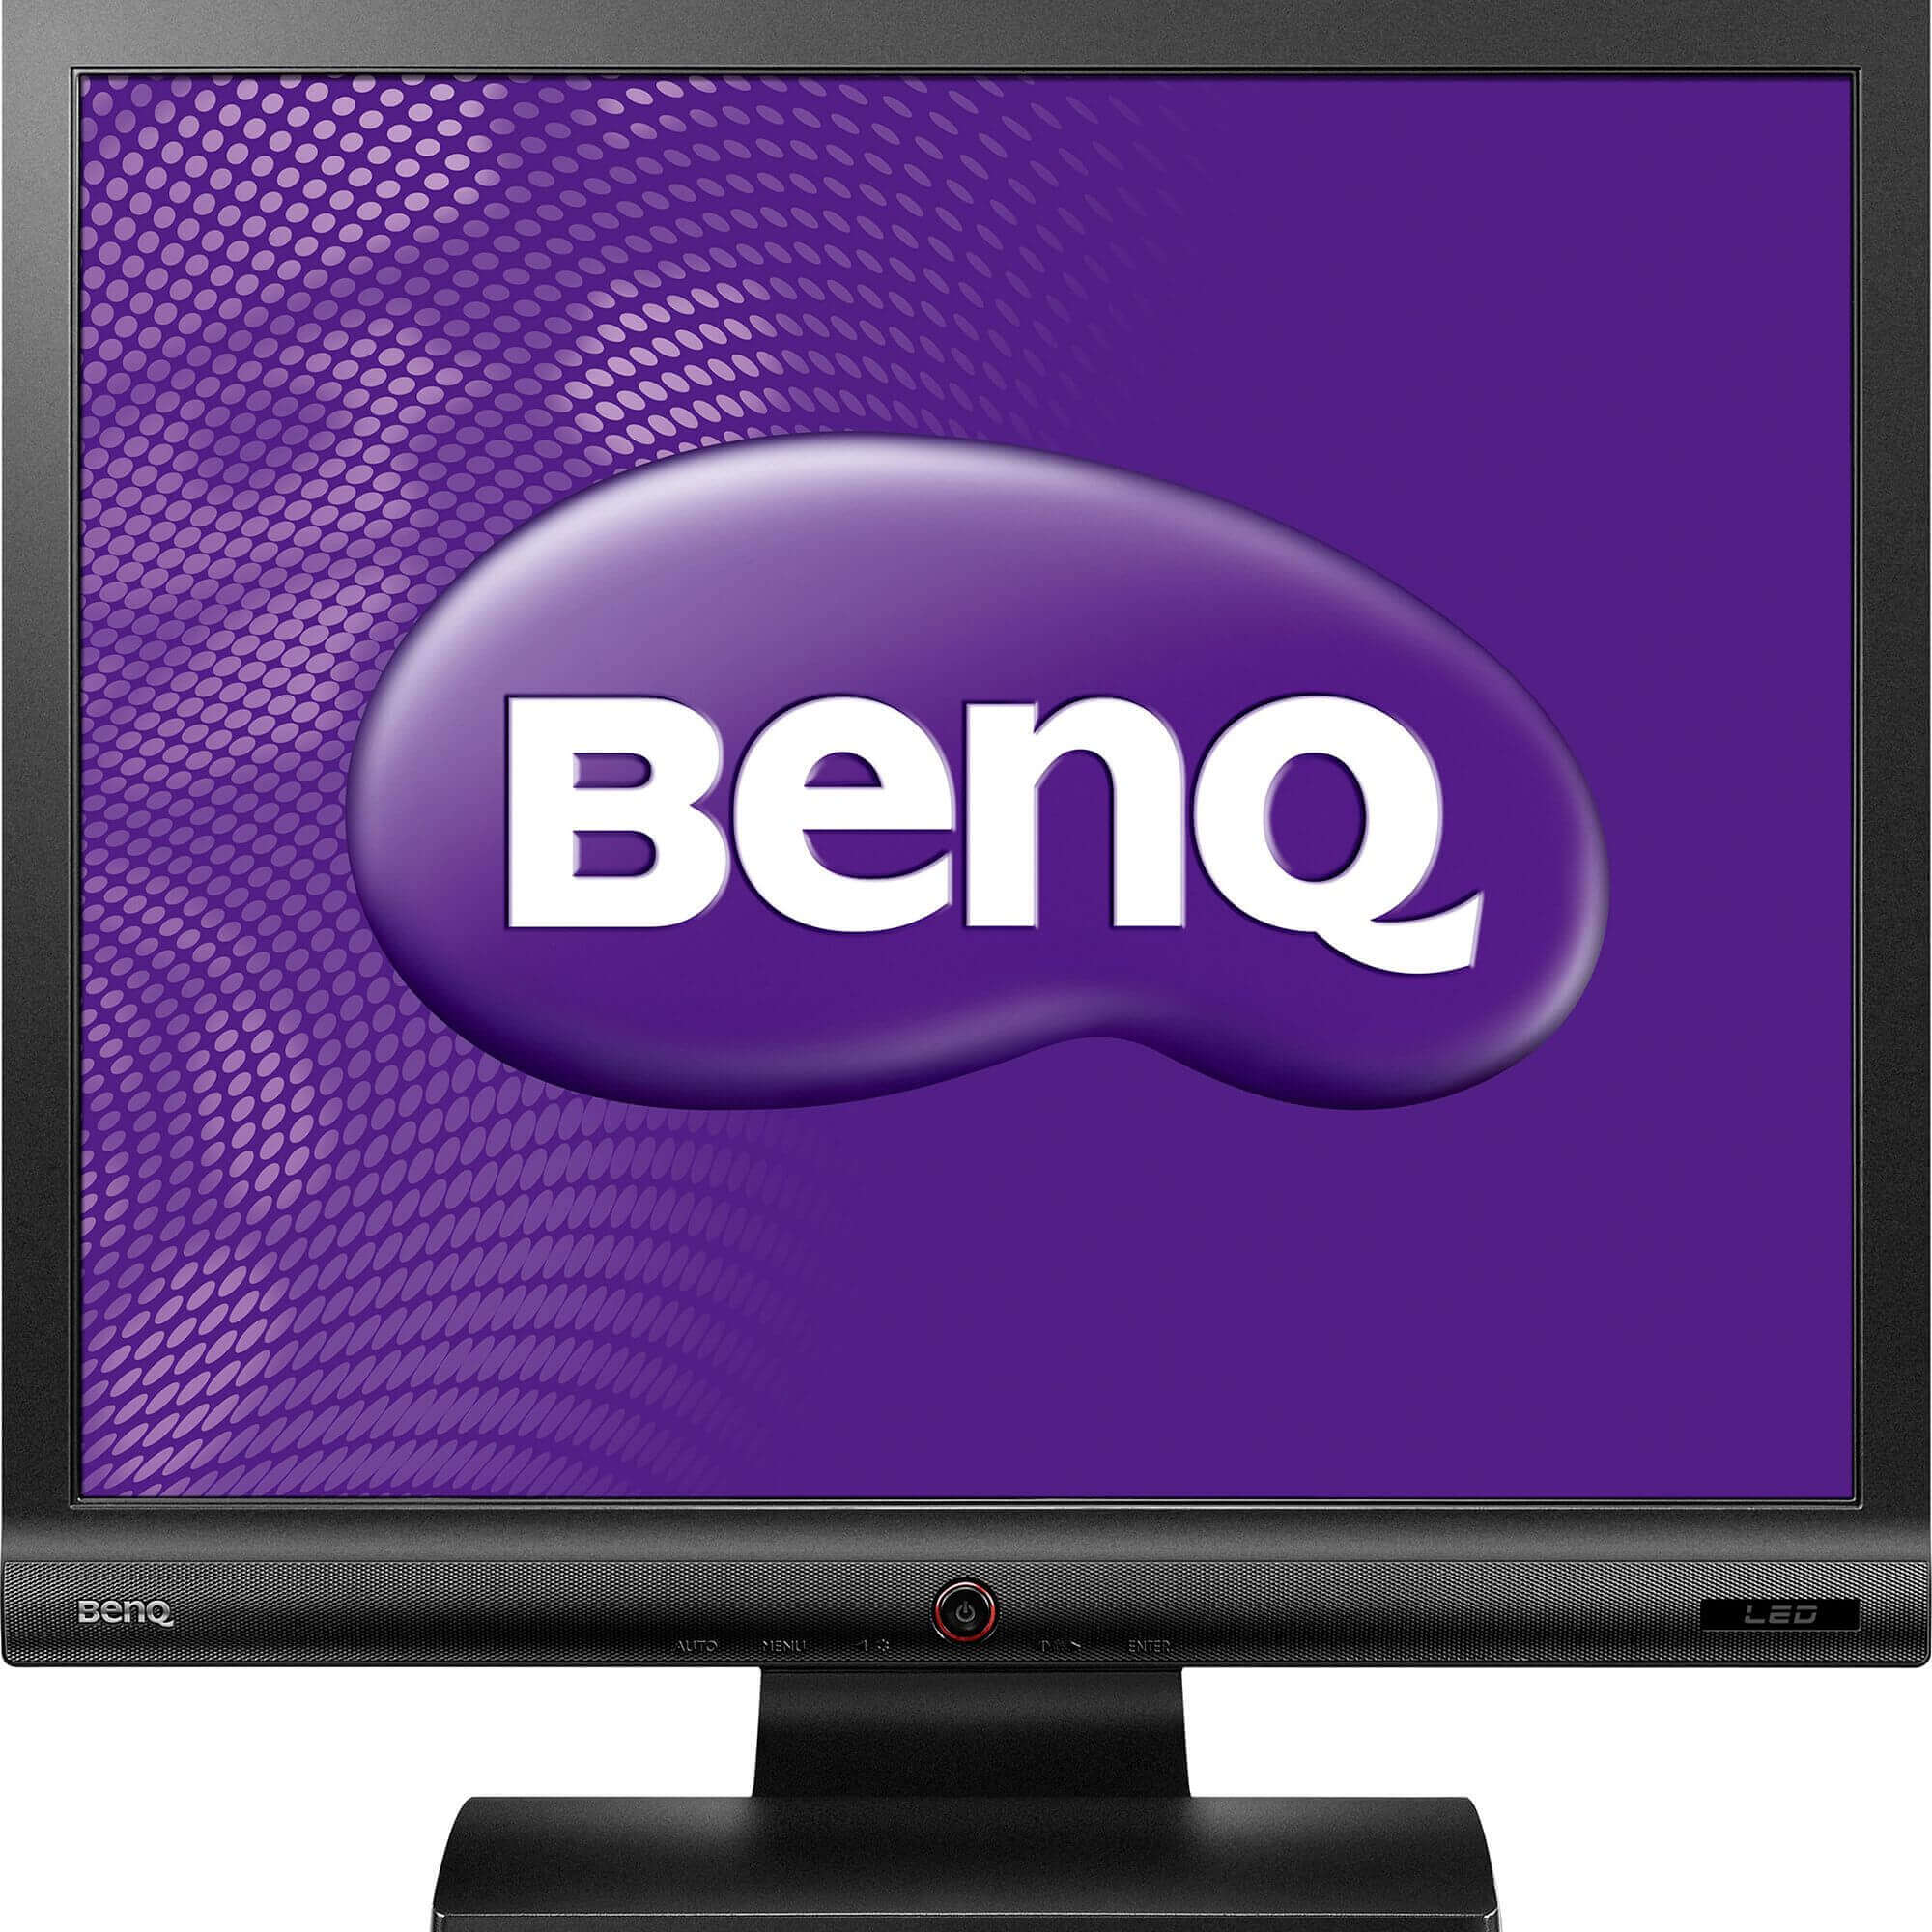  Monitor LED Benq BL702A, 17 inch, Full HD, Negru 